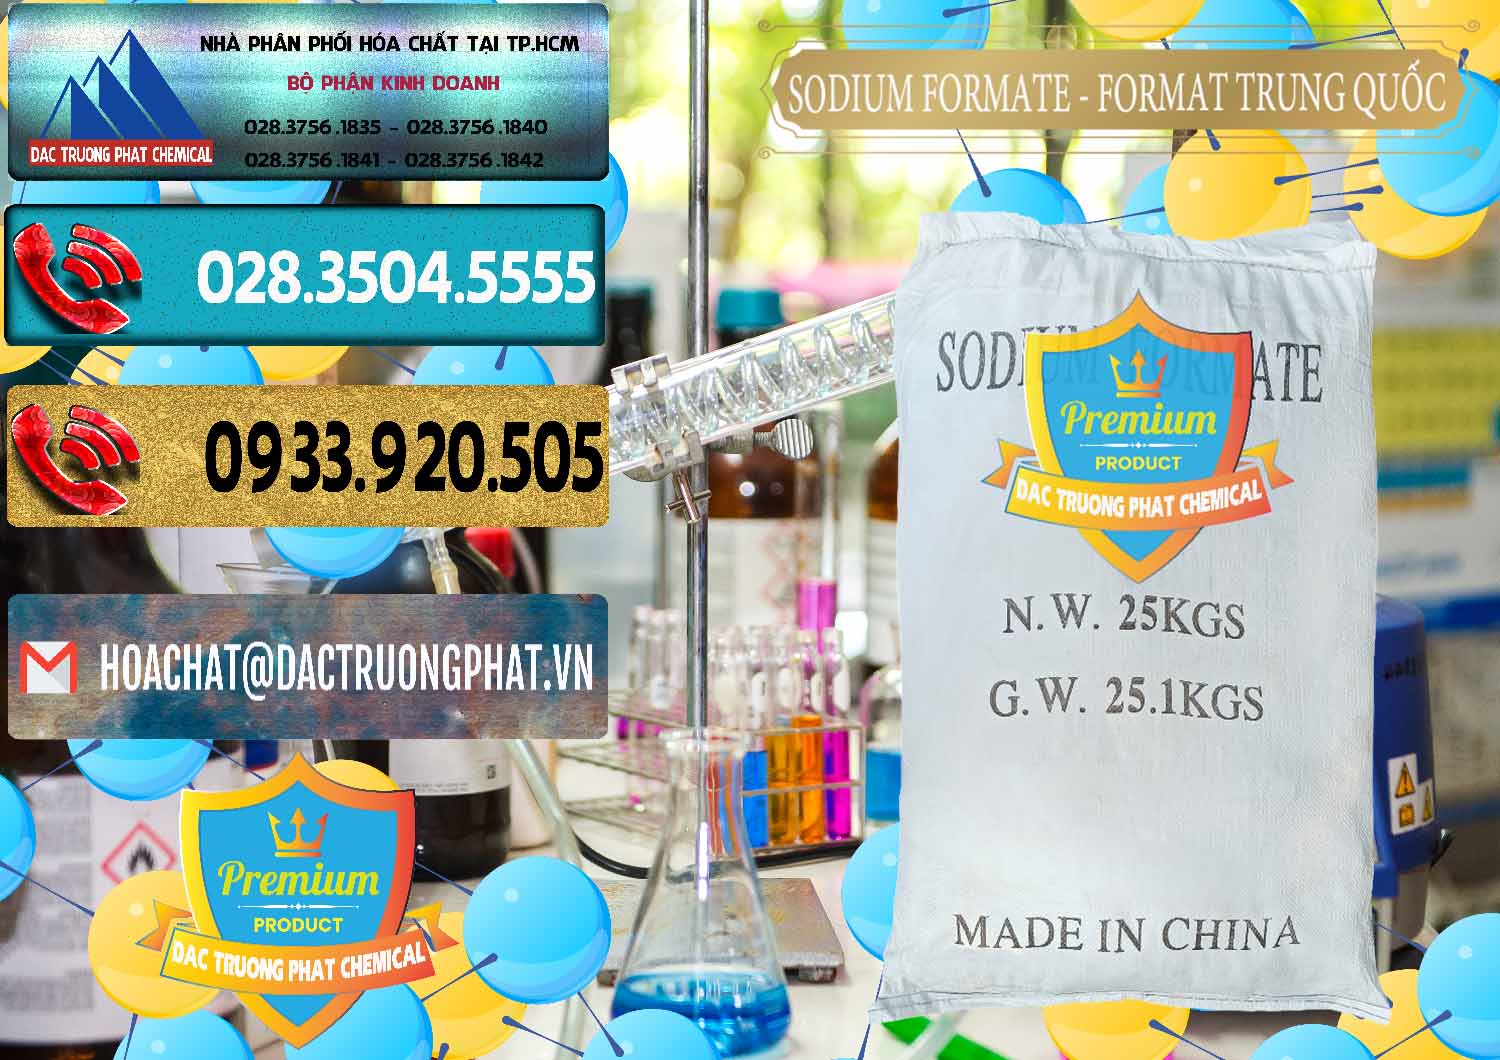 Cung ứng và bán Sodium Formate - Natri Format Trung Quốc China - 0142 - Cty cung cấp và phân phối hóa chất tại TP.HCM - hoachatdetnhuom.com